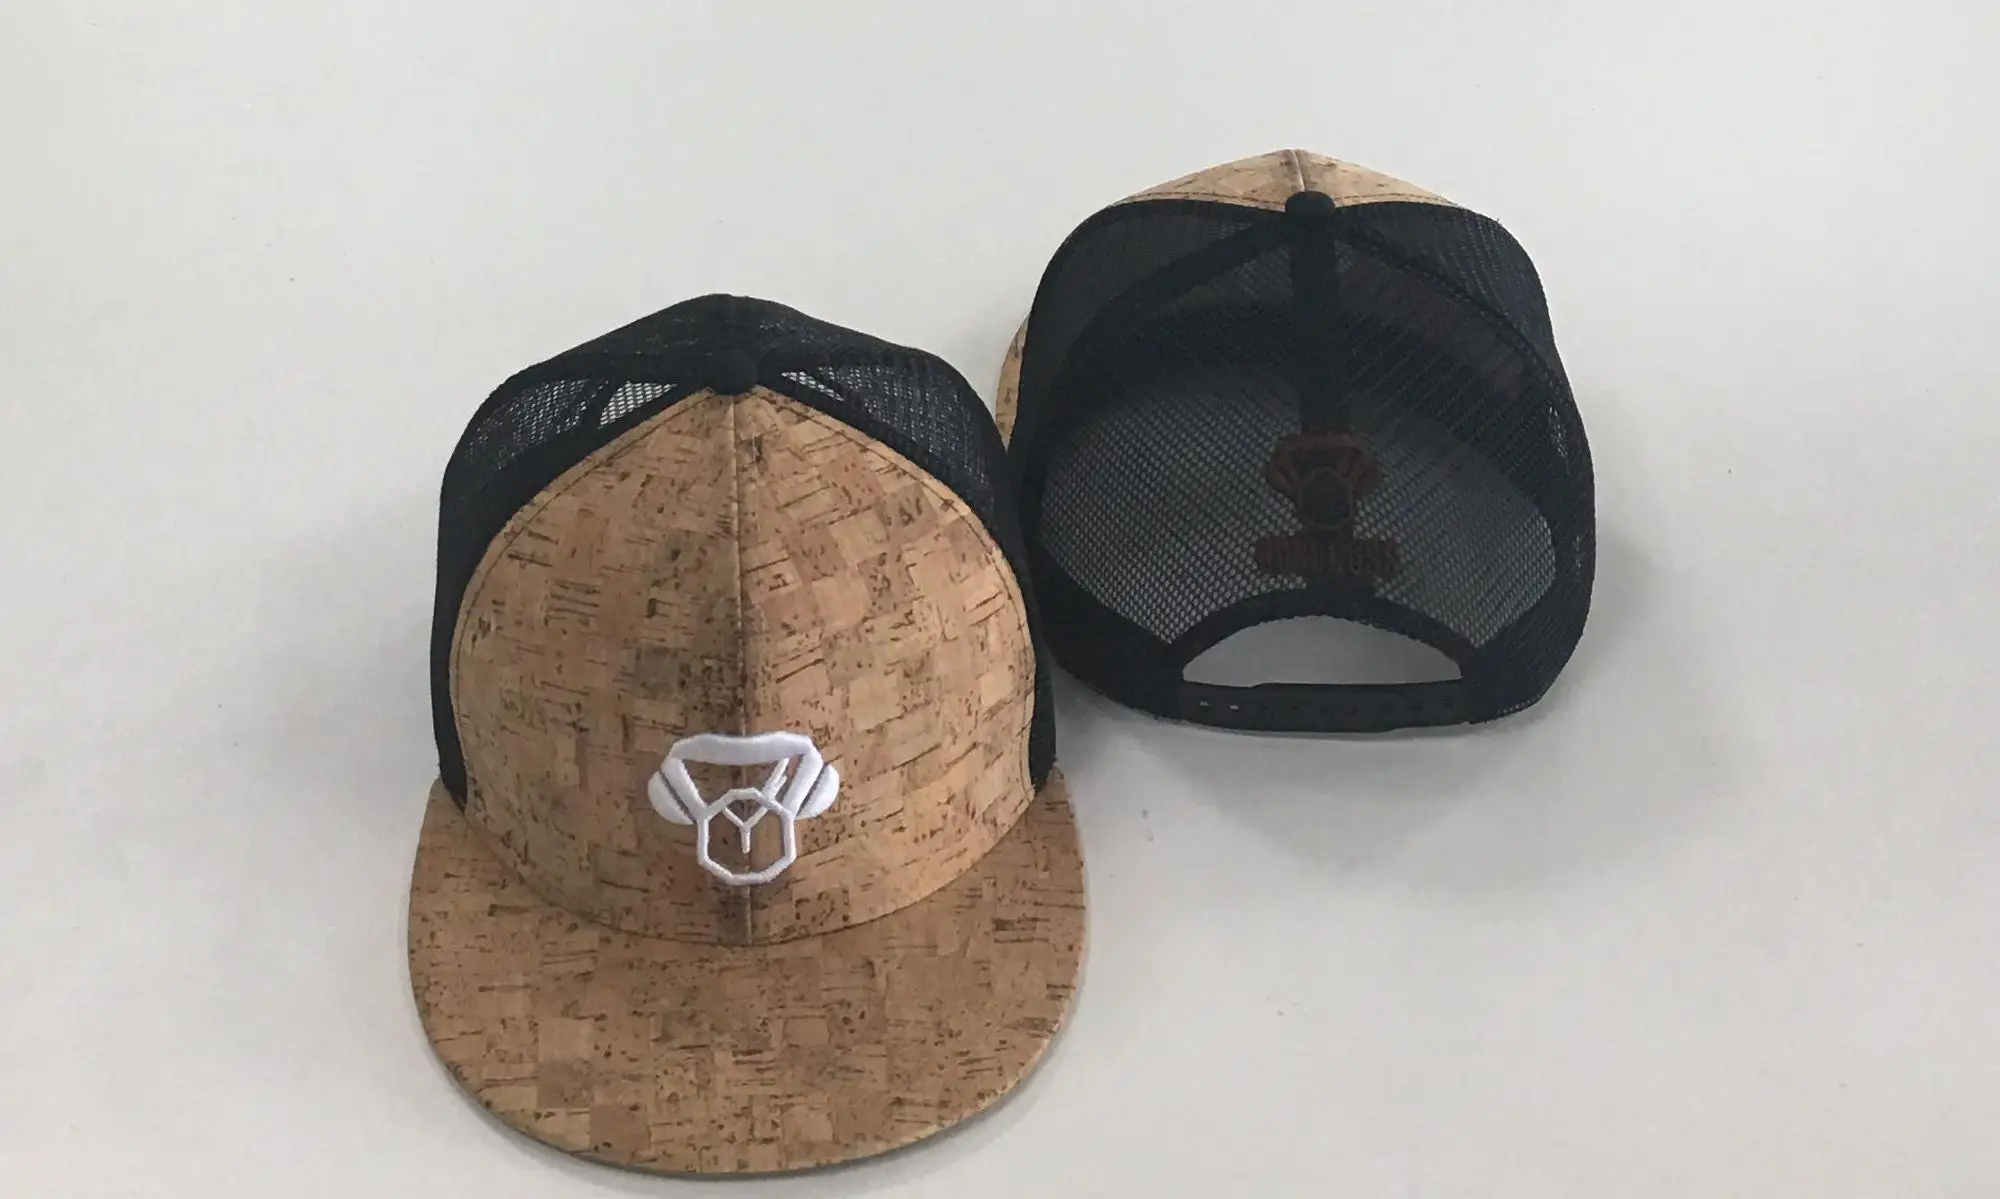 カスタム木製コルク帽子フラットつば帽子 Buy 木製コルク帽子 木製コルクフラットつば帽子 カスタム木製コルク帽子 Product On Alibaba Com